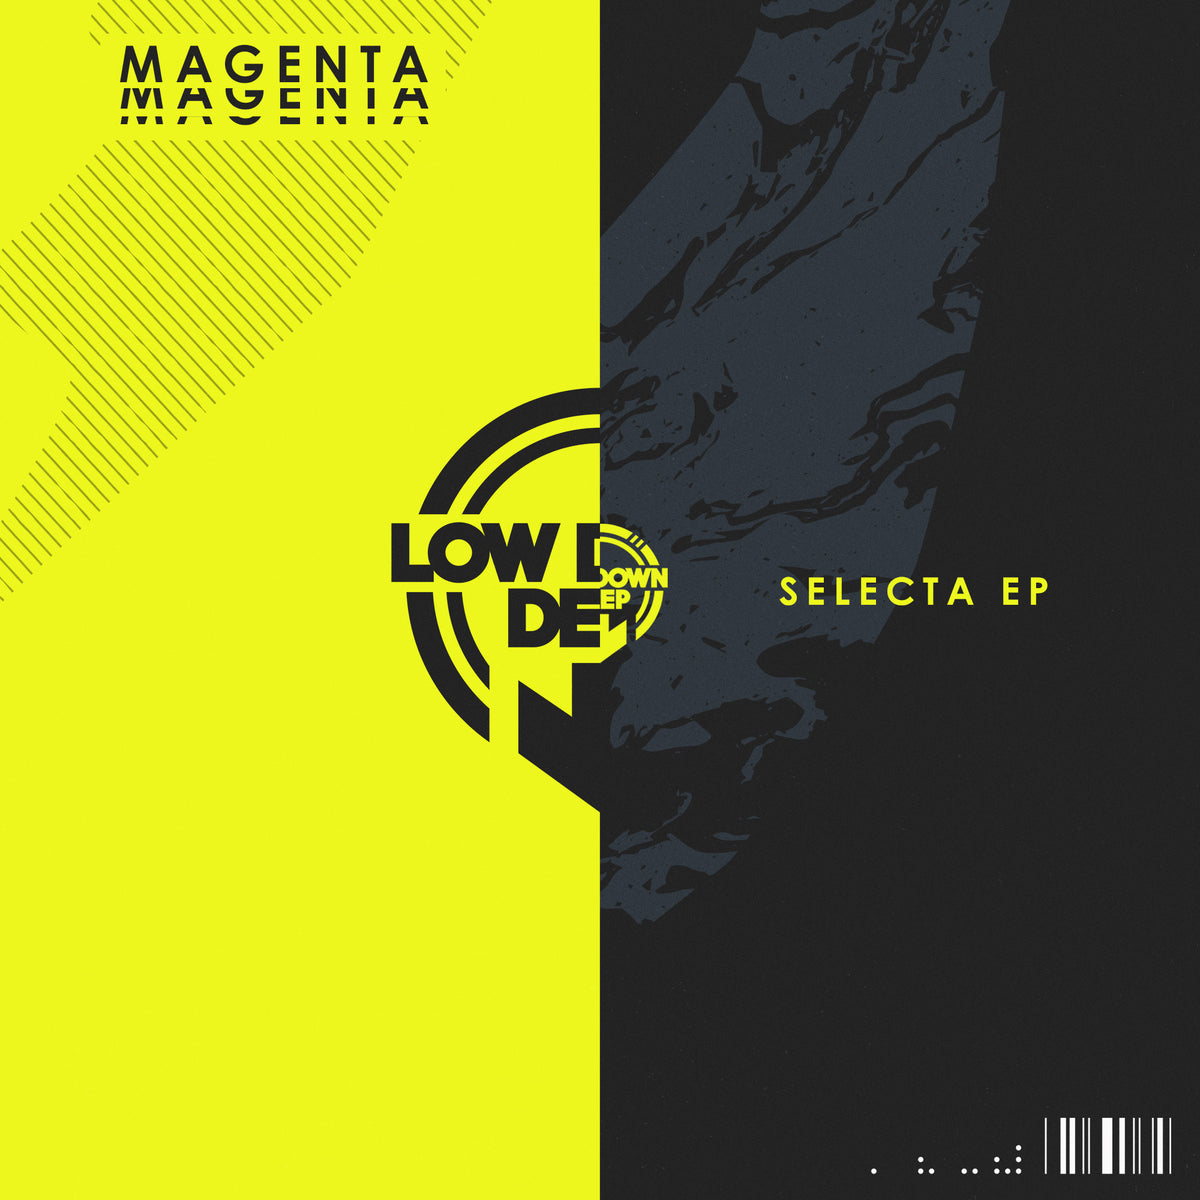 LDD 186 - Magenta 'Selecta EP'